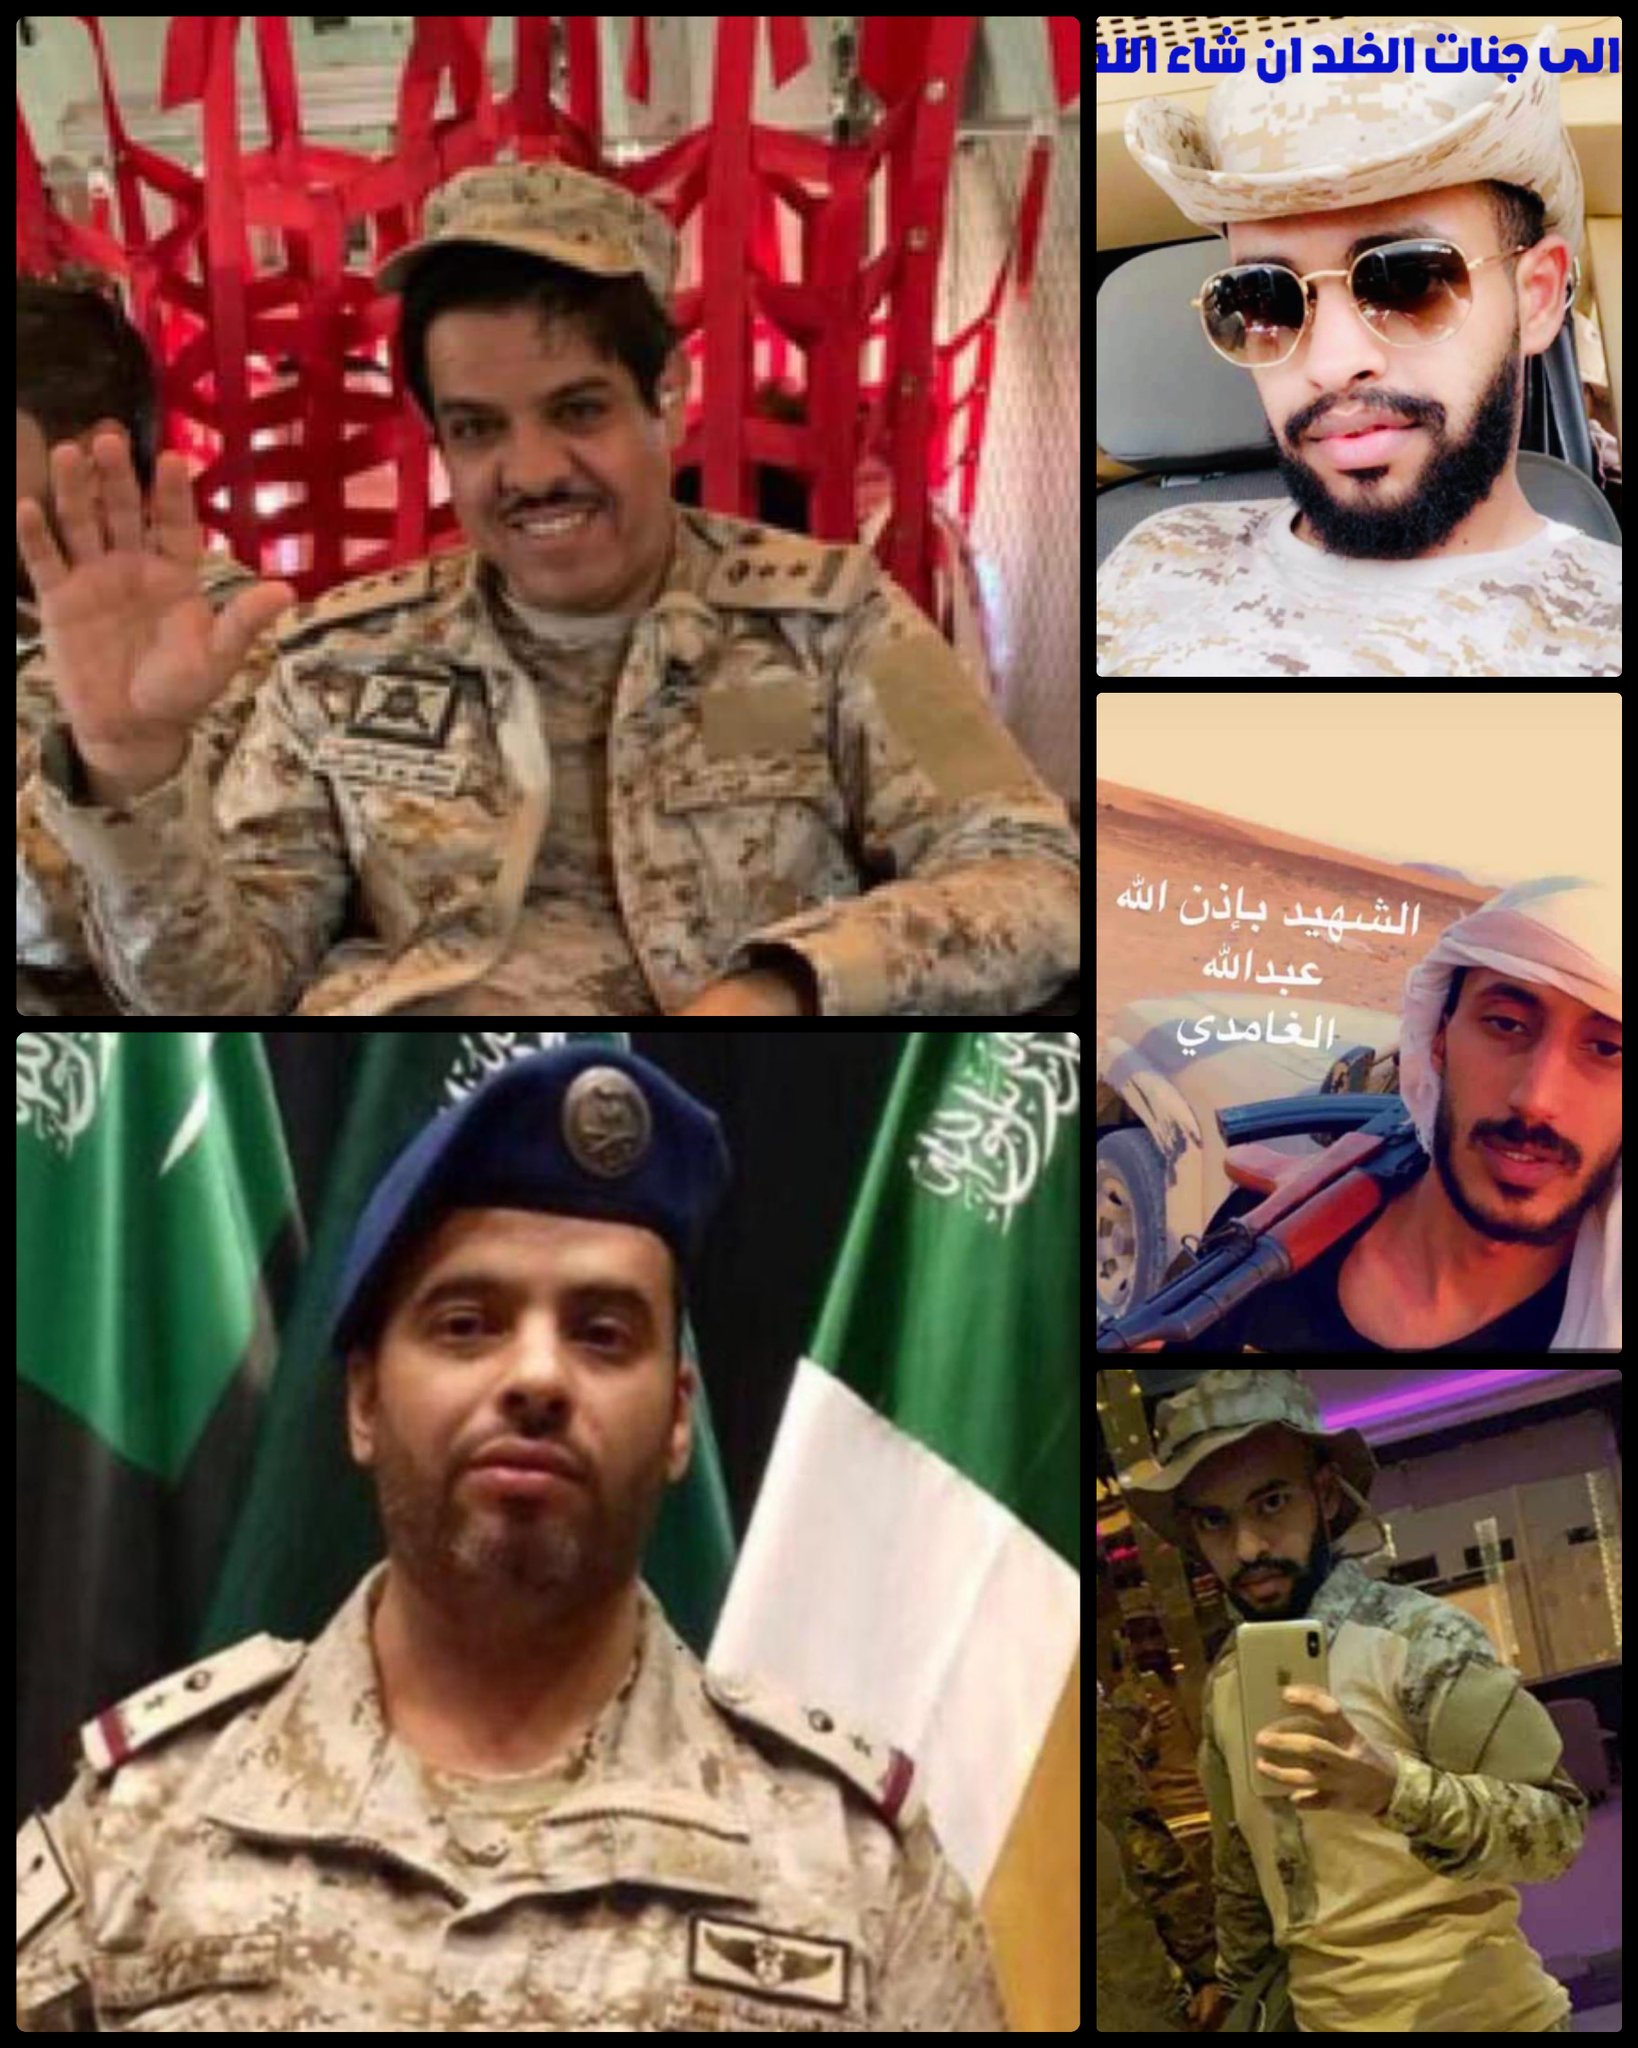 خبر هام ورد الآن: ضربة بالستية تحصد قادة سعوديين في تخوم مدينة مأرب (أسماء الضباط وصورهم)